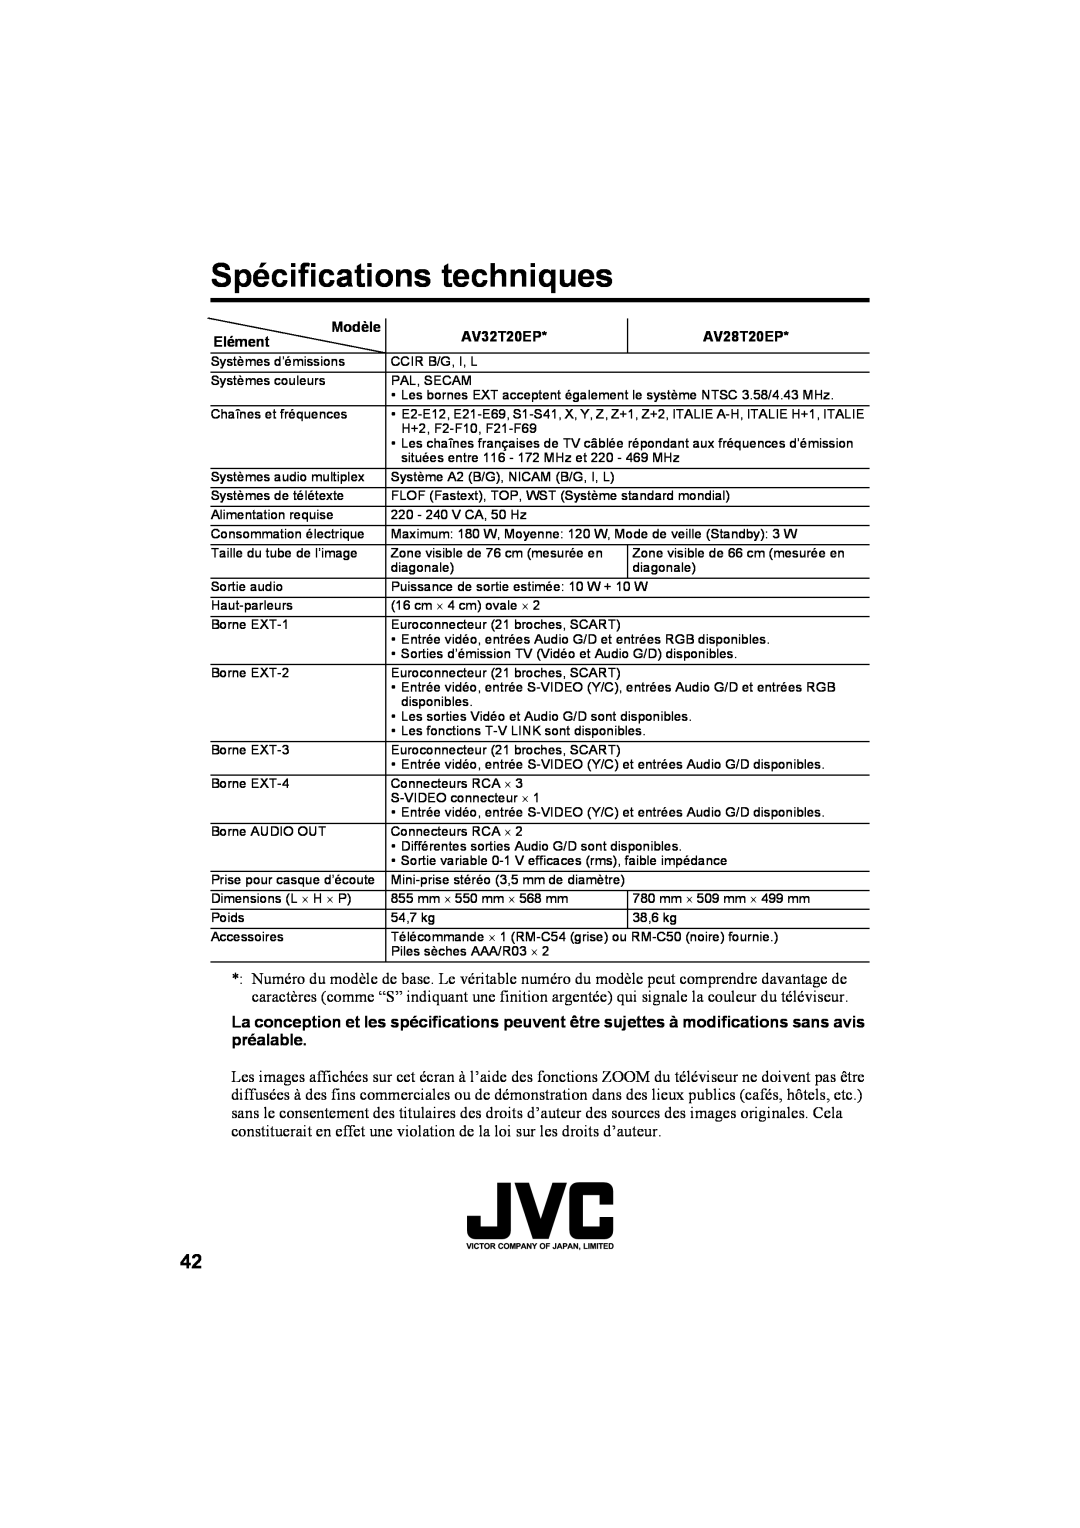 JVC AV28T20EP, AV32T20EP manual Spécifications techniques, Modèle 